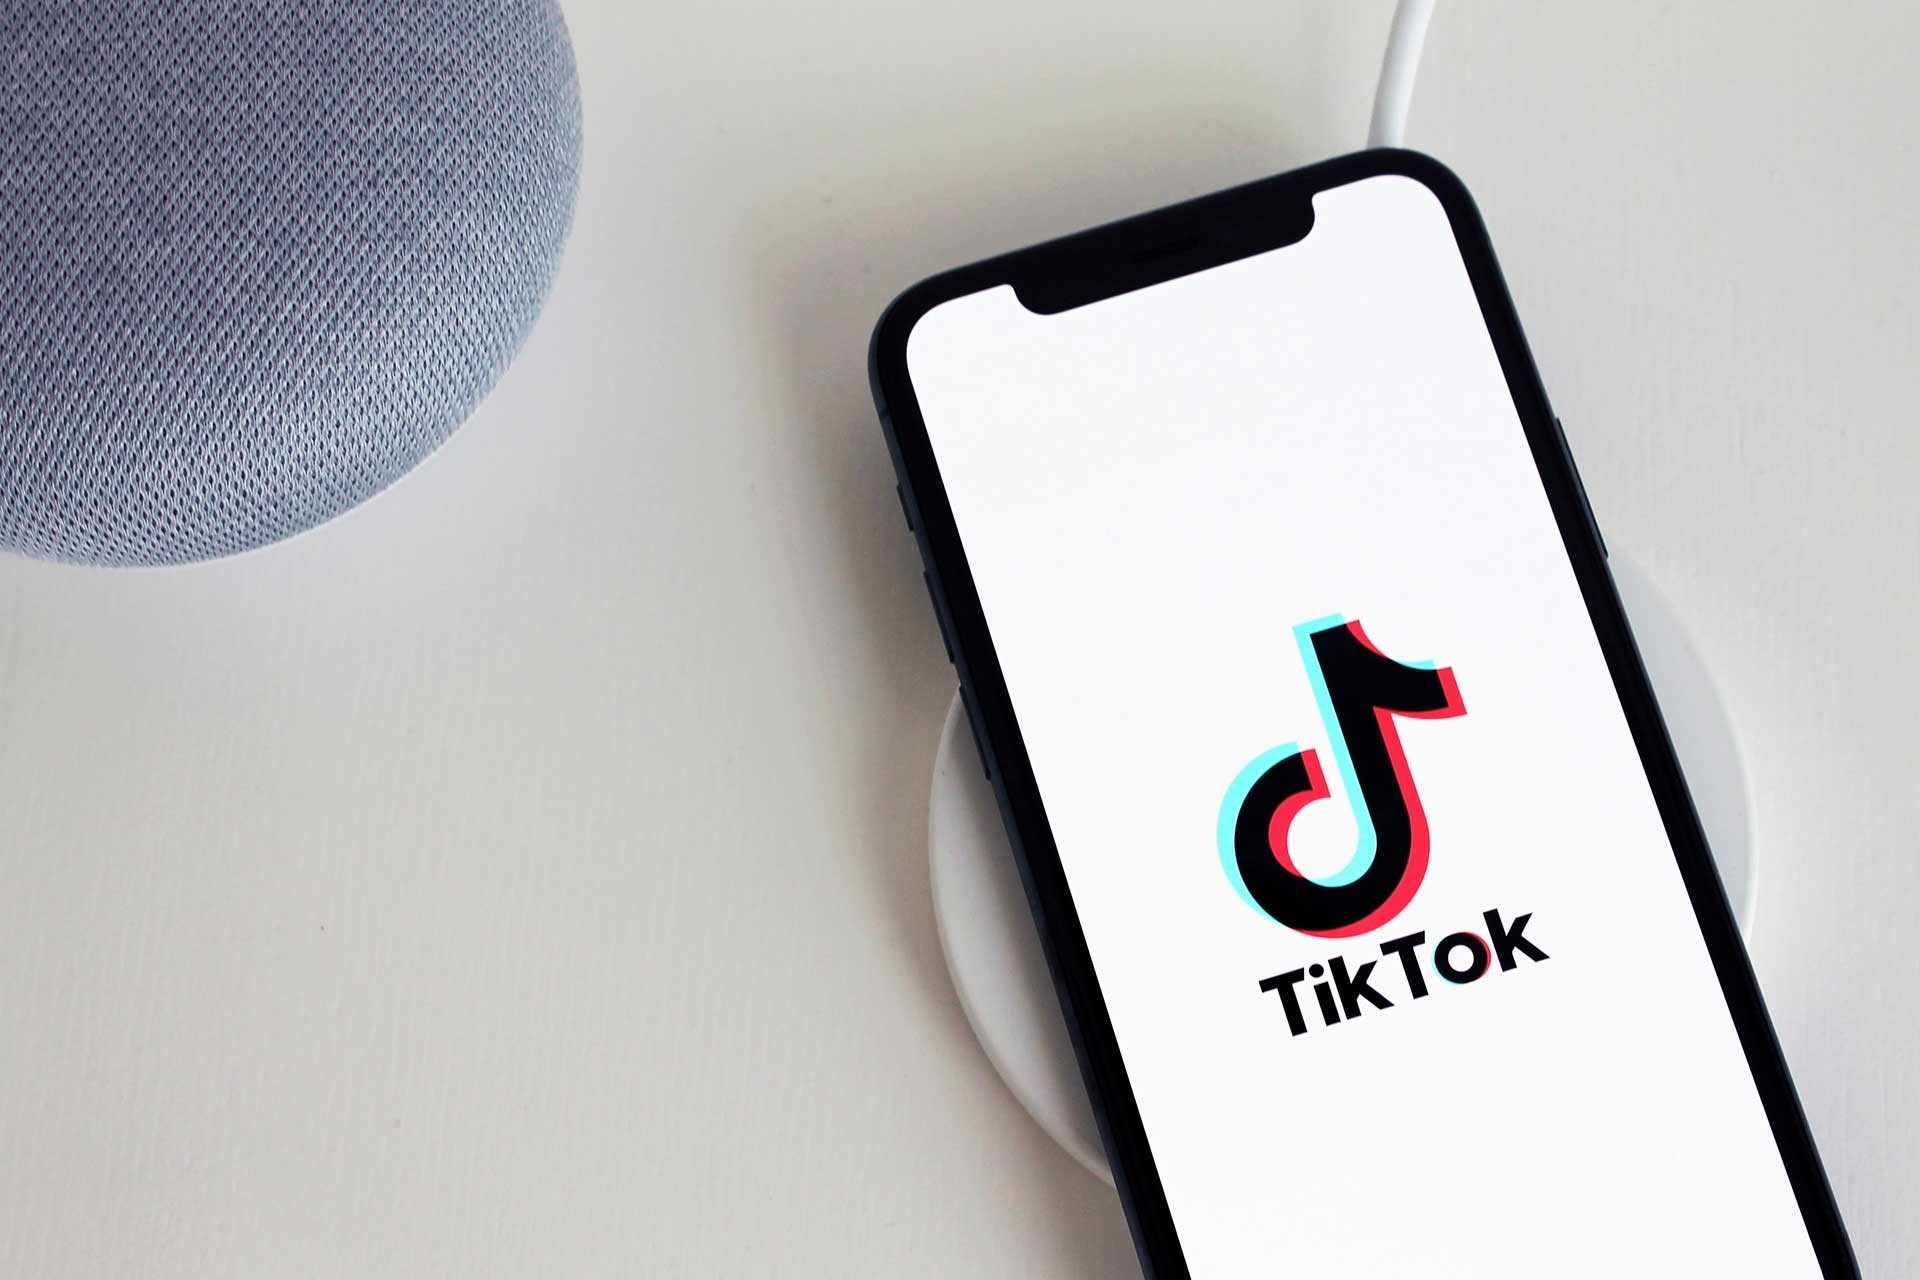 İddiaya göre TikTok bir güvenlik açığından yararlanarak 15 ay boyunca Android cihazların MAC adreslerini topladı